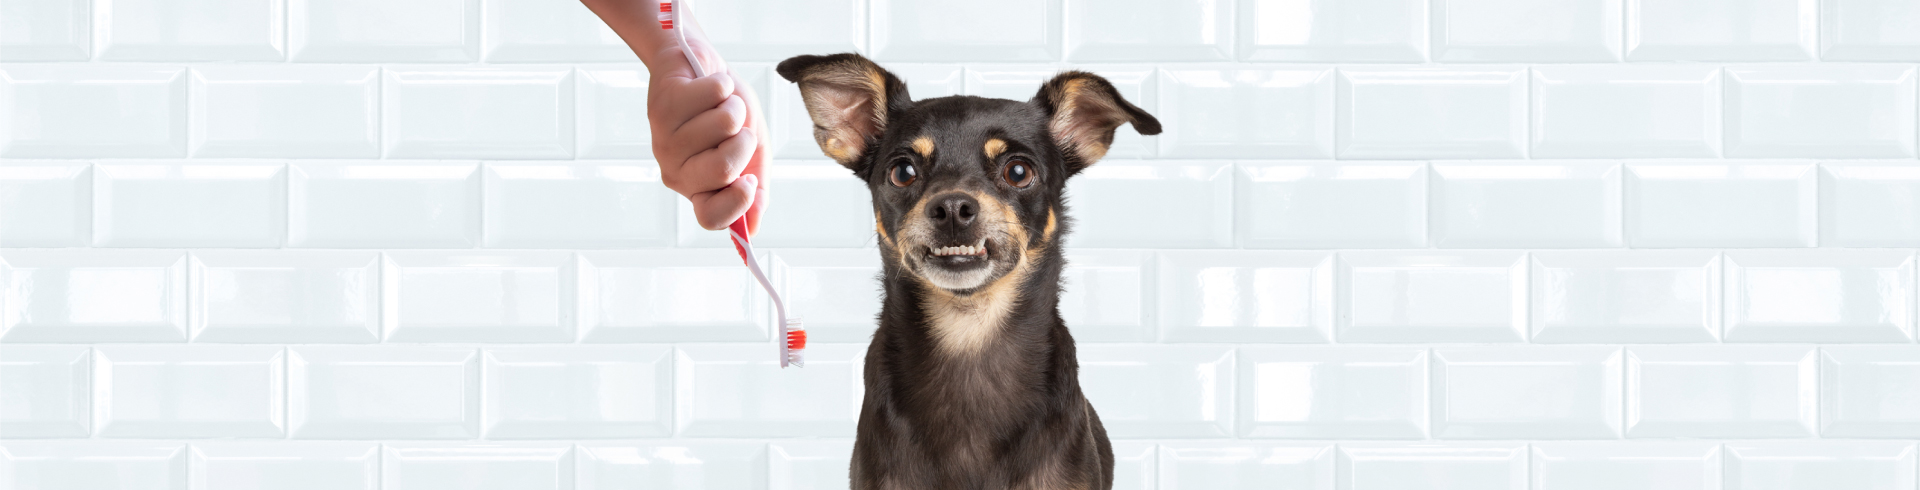 Limpieza dental en perros - Petys